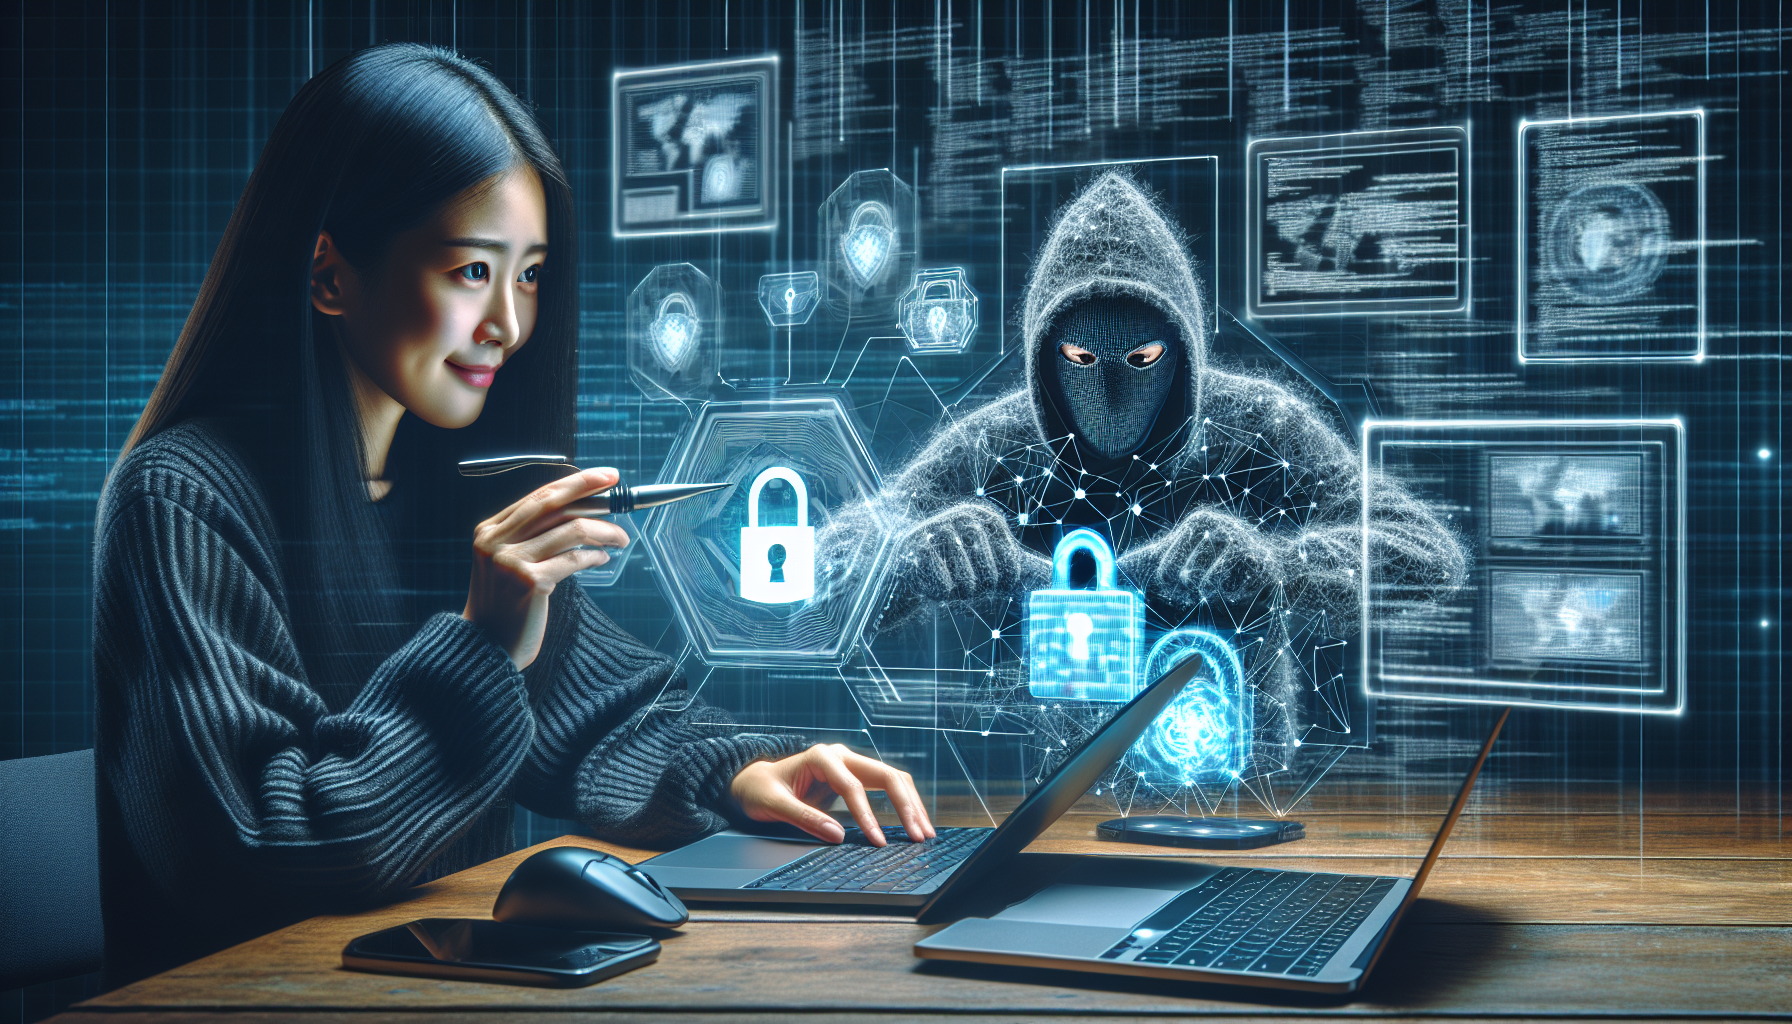 découvrez tout sur la cybersécurité avec notre formation. apprenez ce qu'est la cybersécurité et comment vous protéger contre les menaces en ligne.